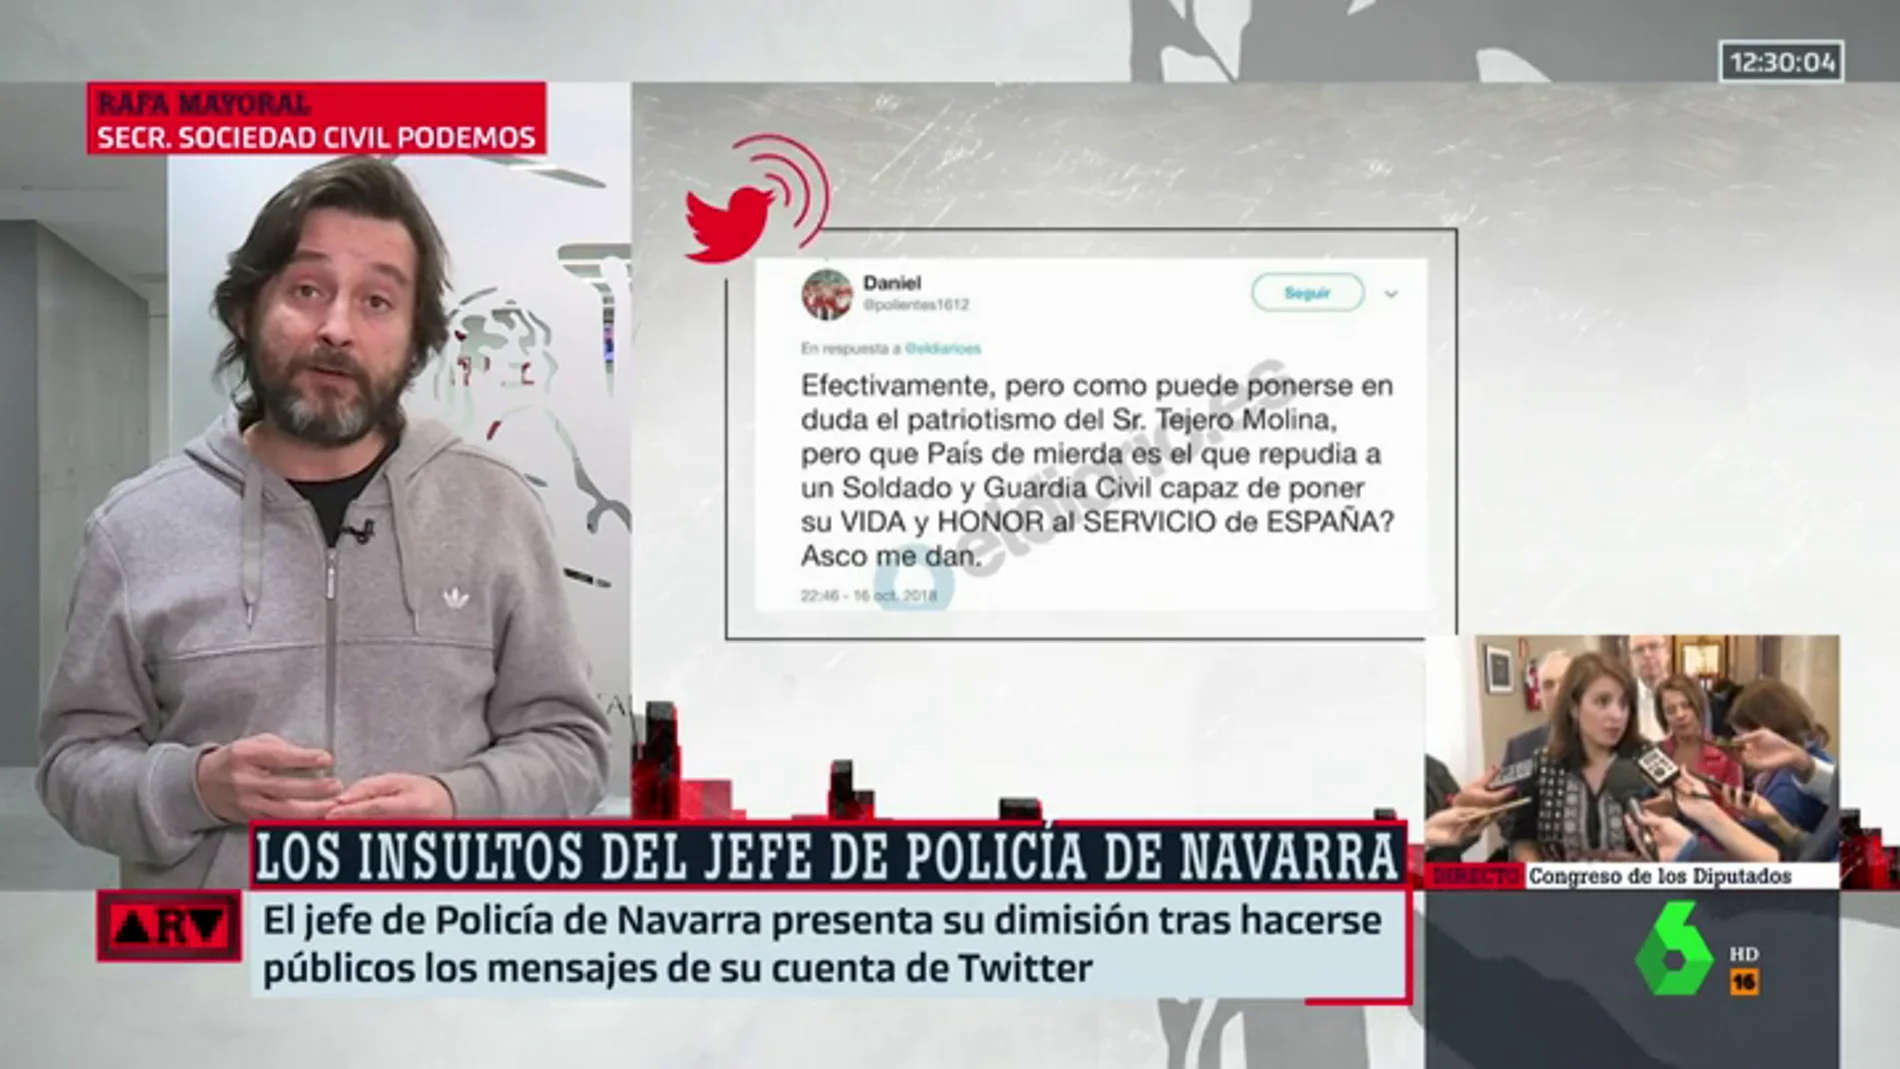 Rafael Mayoral, de los insultos del exjefe de policía en Navarra: "Es importante la democracia en las fuerzas y cuerpos de Seguridad del Estado"